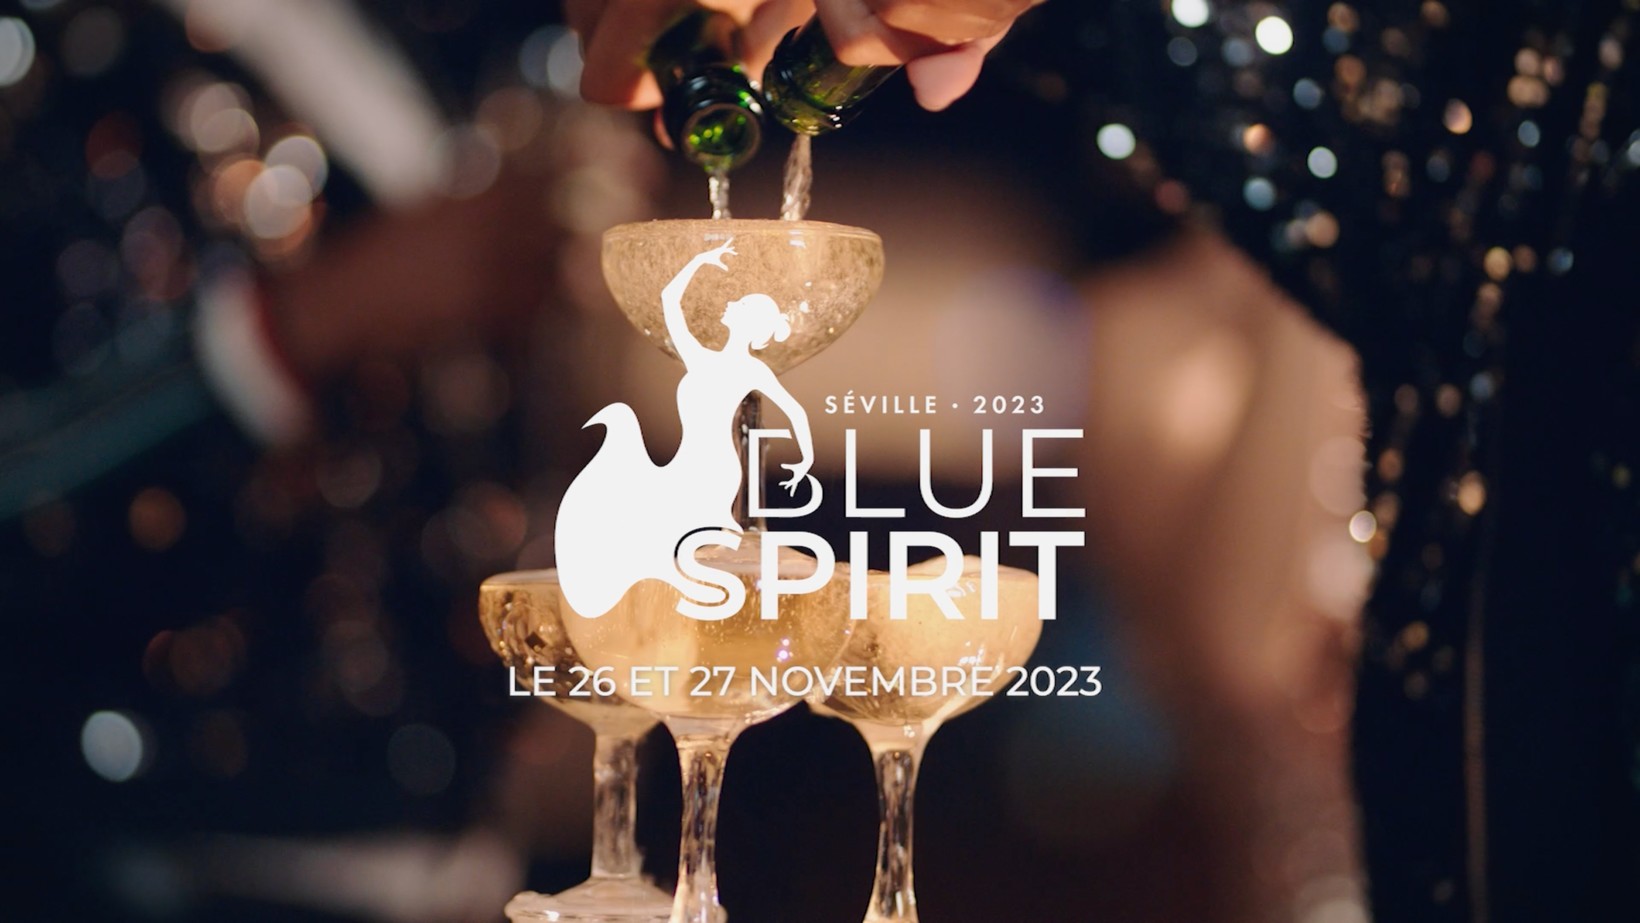 Blue Spirit 2023 approche !